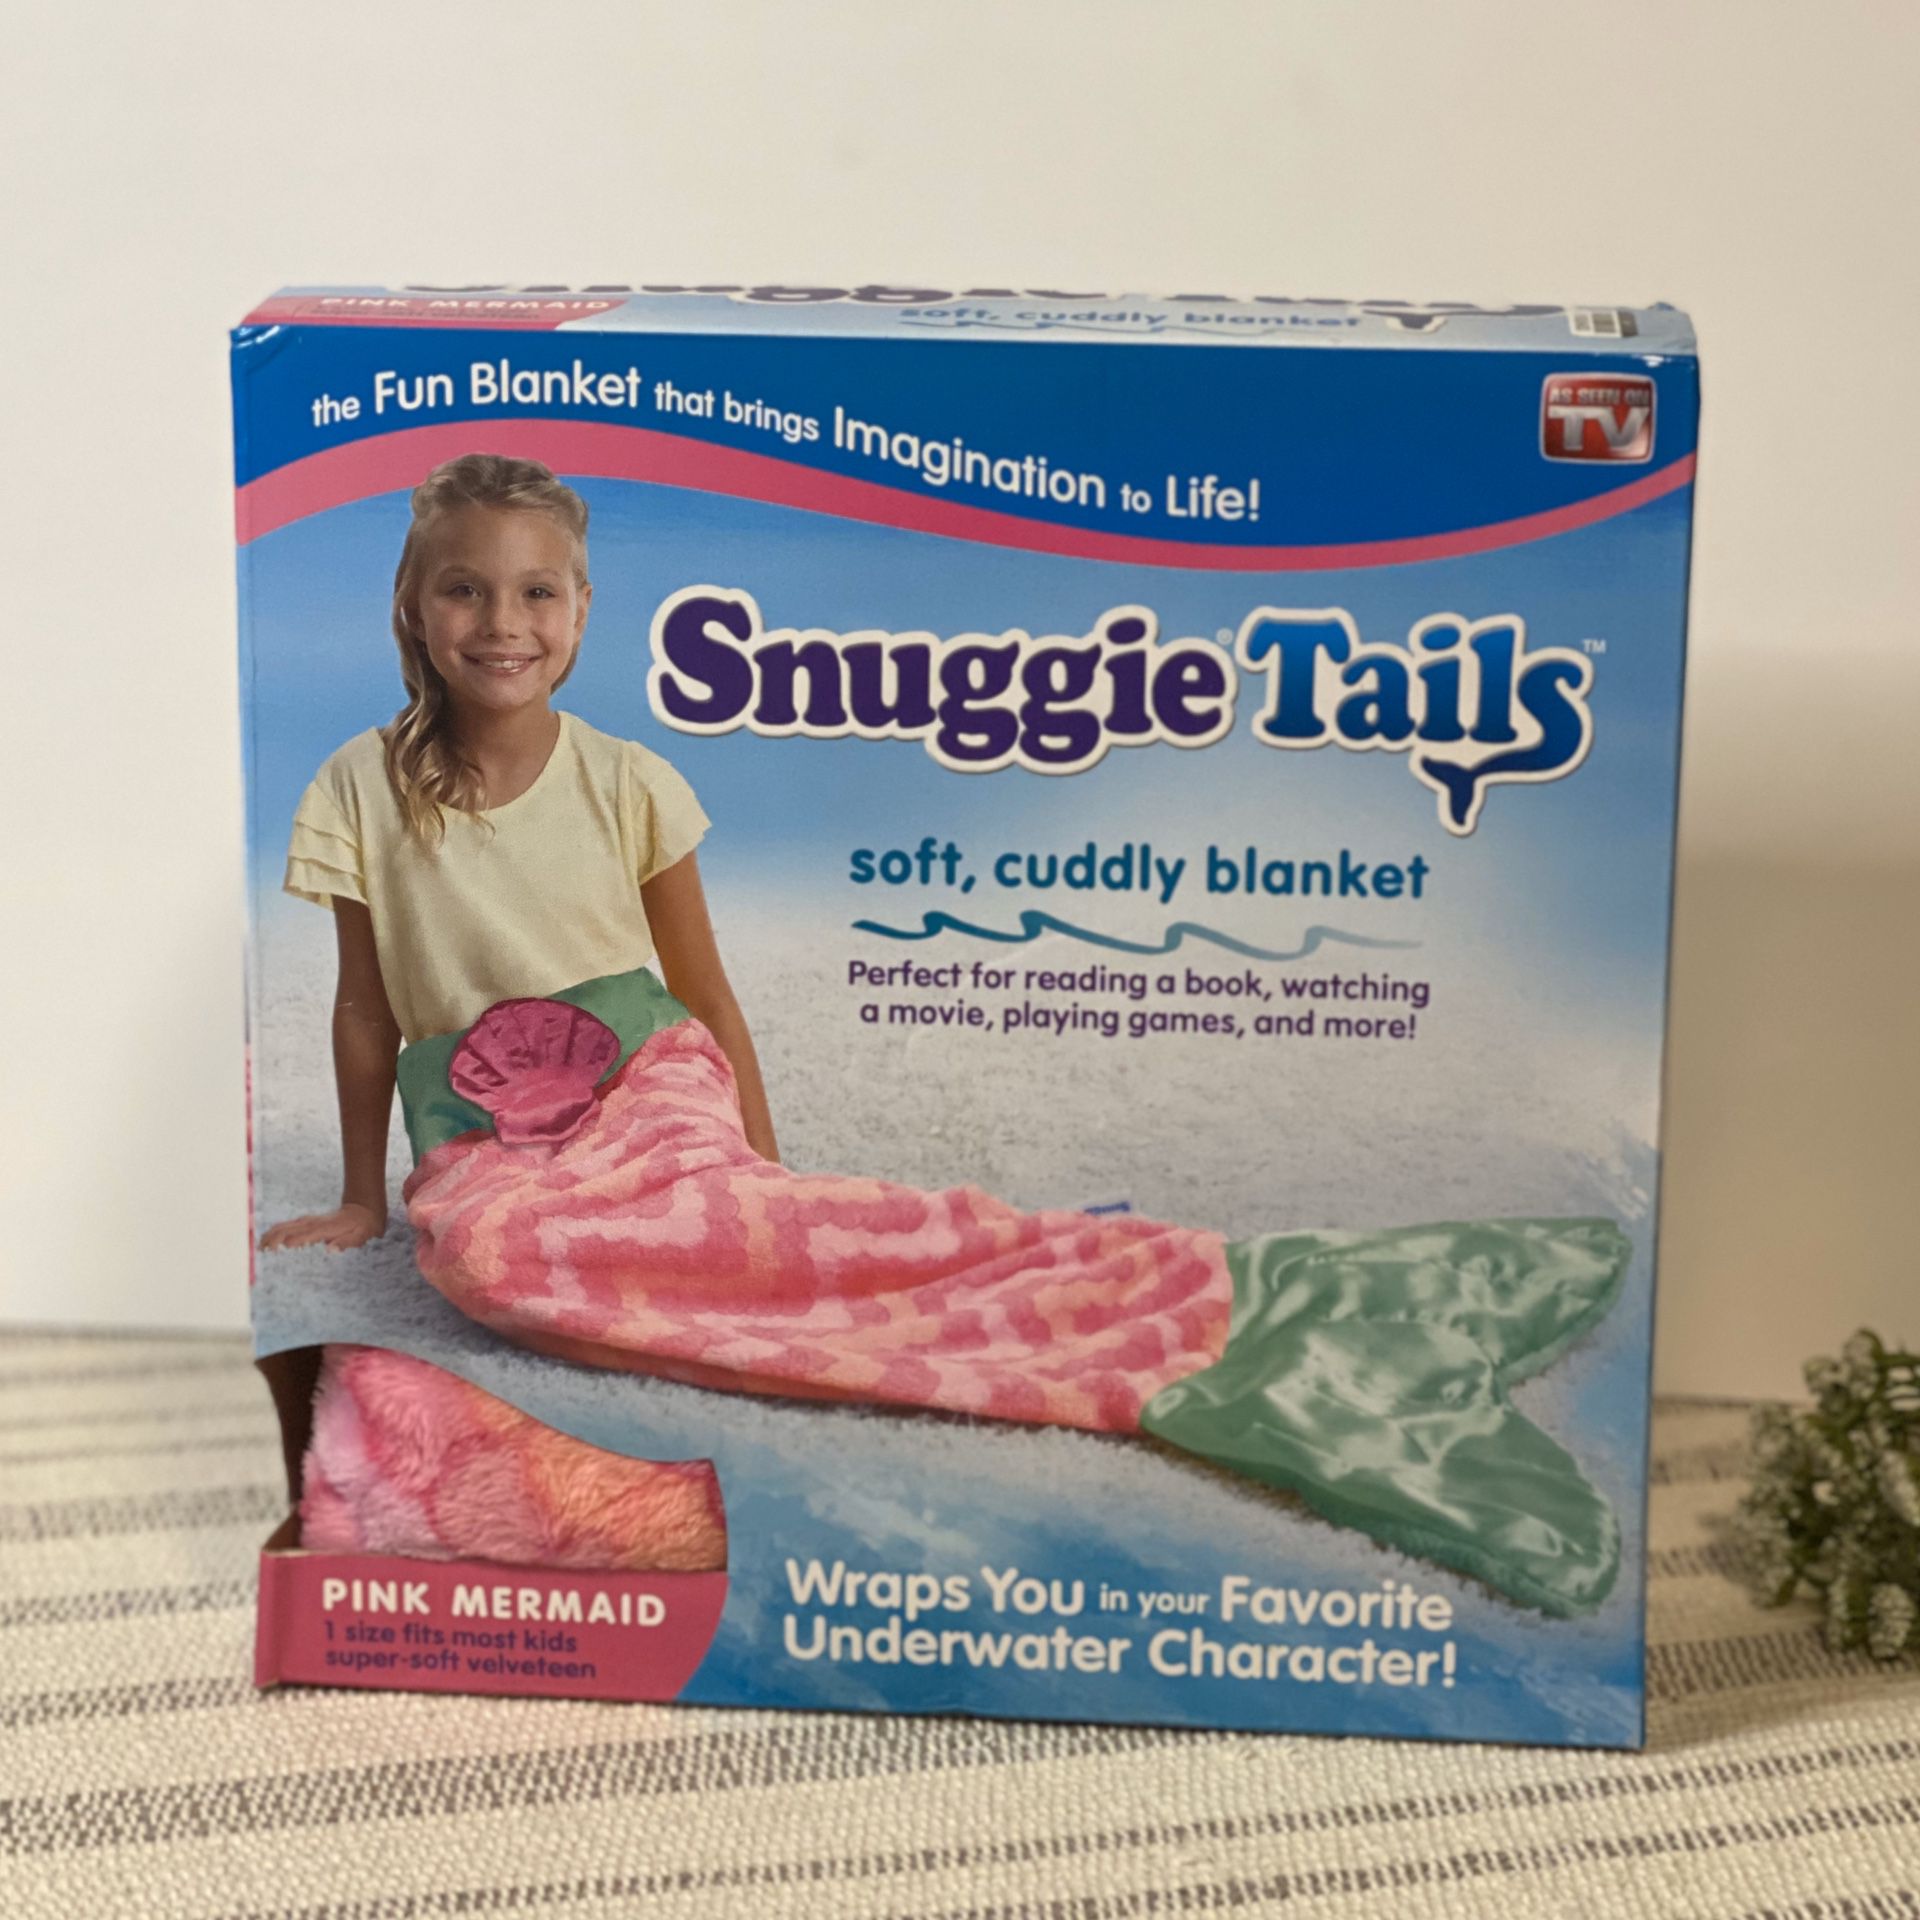 Snuggie mermaid tail blanket